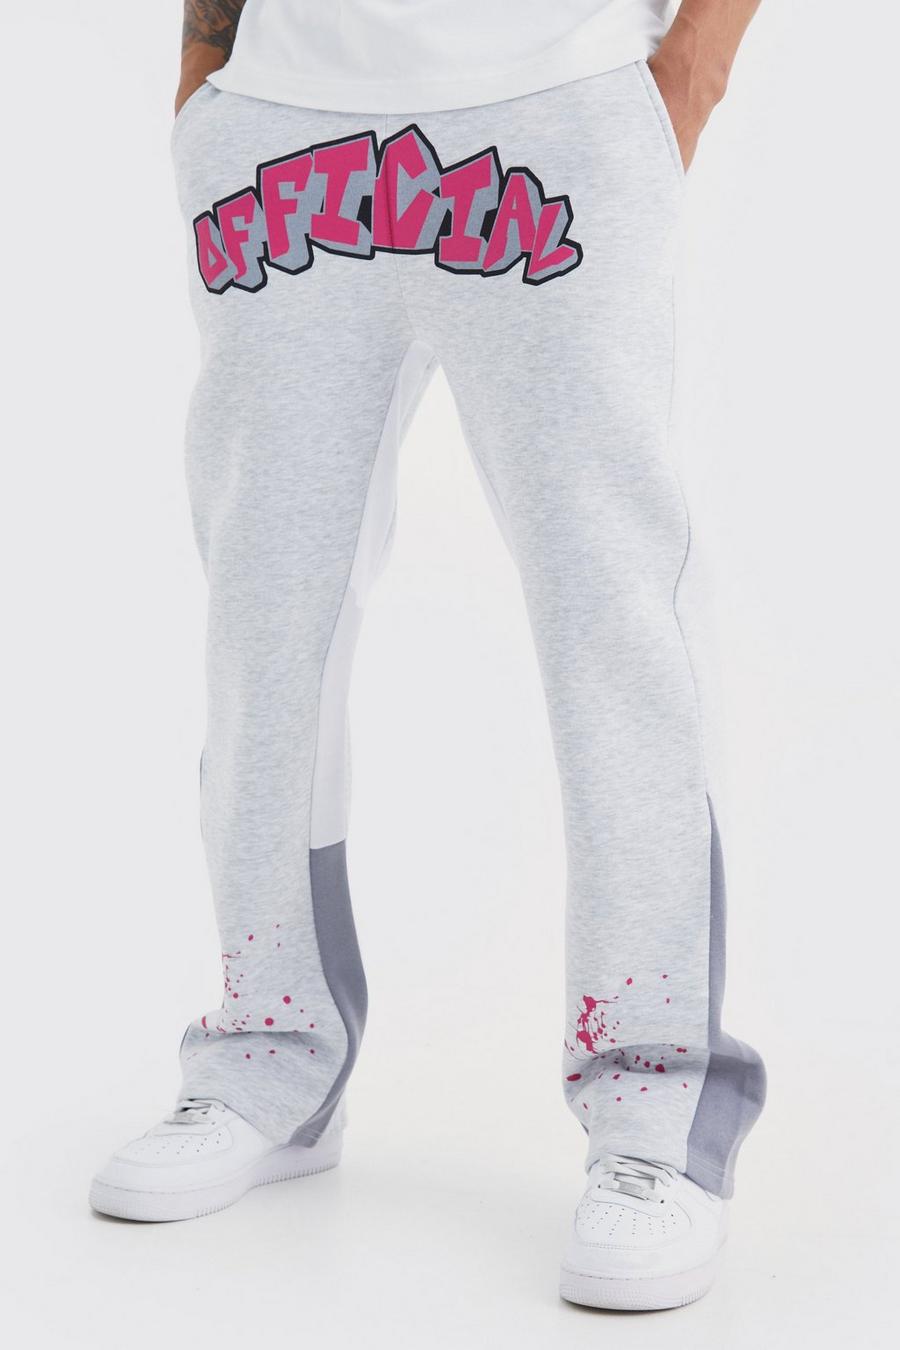 Pantaloni tuta Official stile Graffiti con inserti e schizzi di colore, Ash grey image number 1